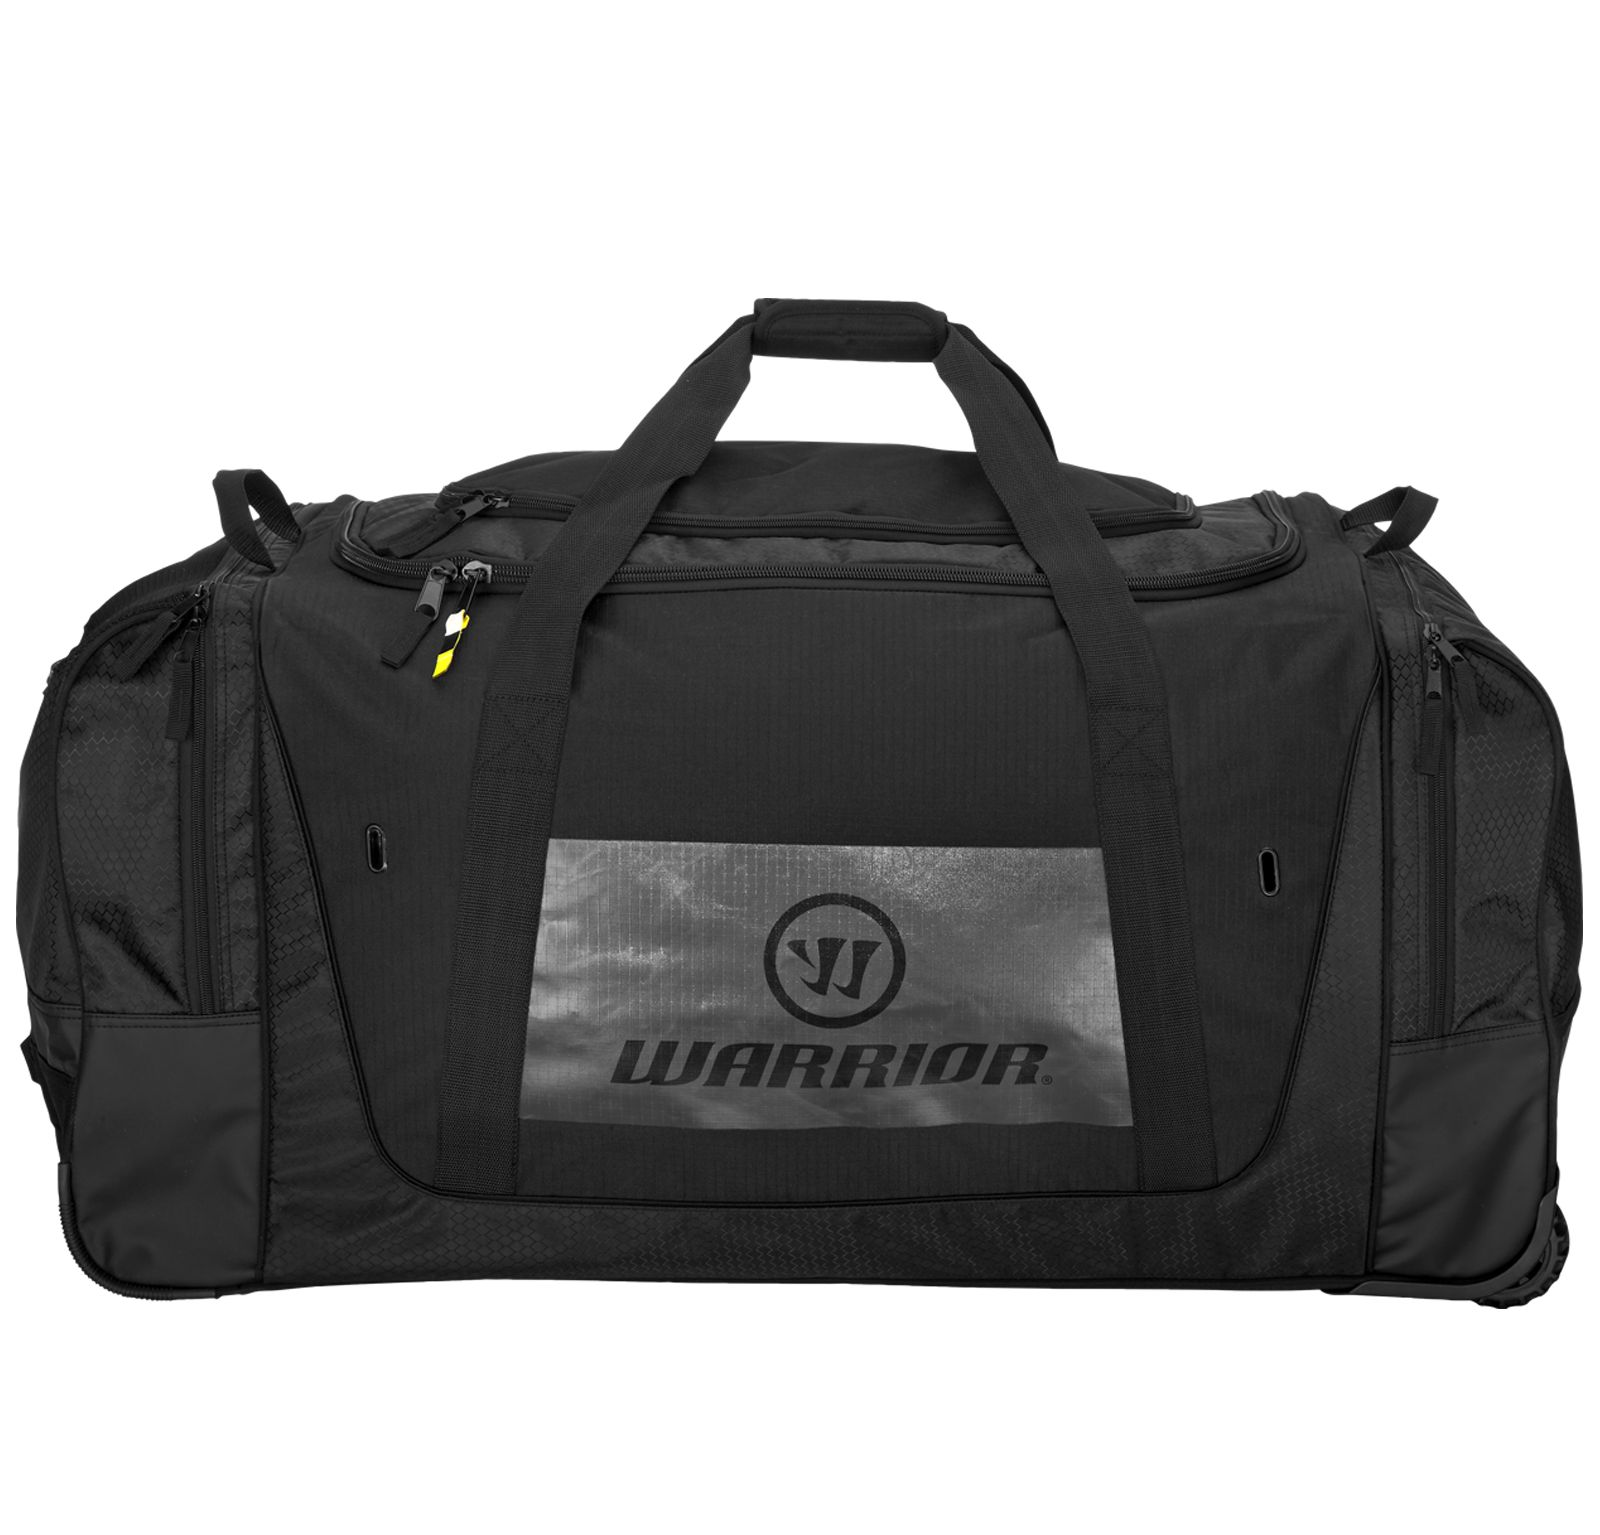 Q10 Cargo Roller Bag, Black with Grey image number 0